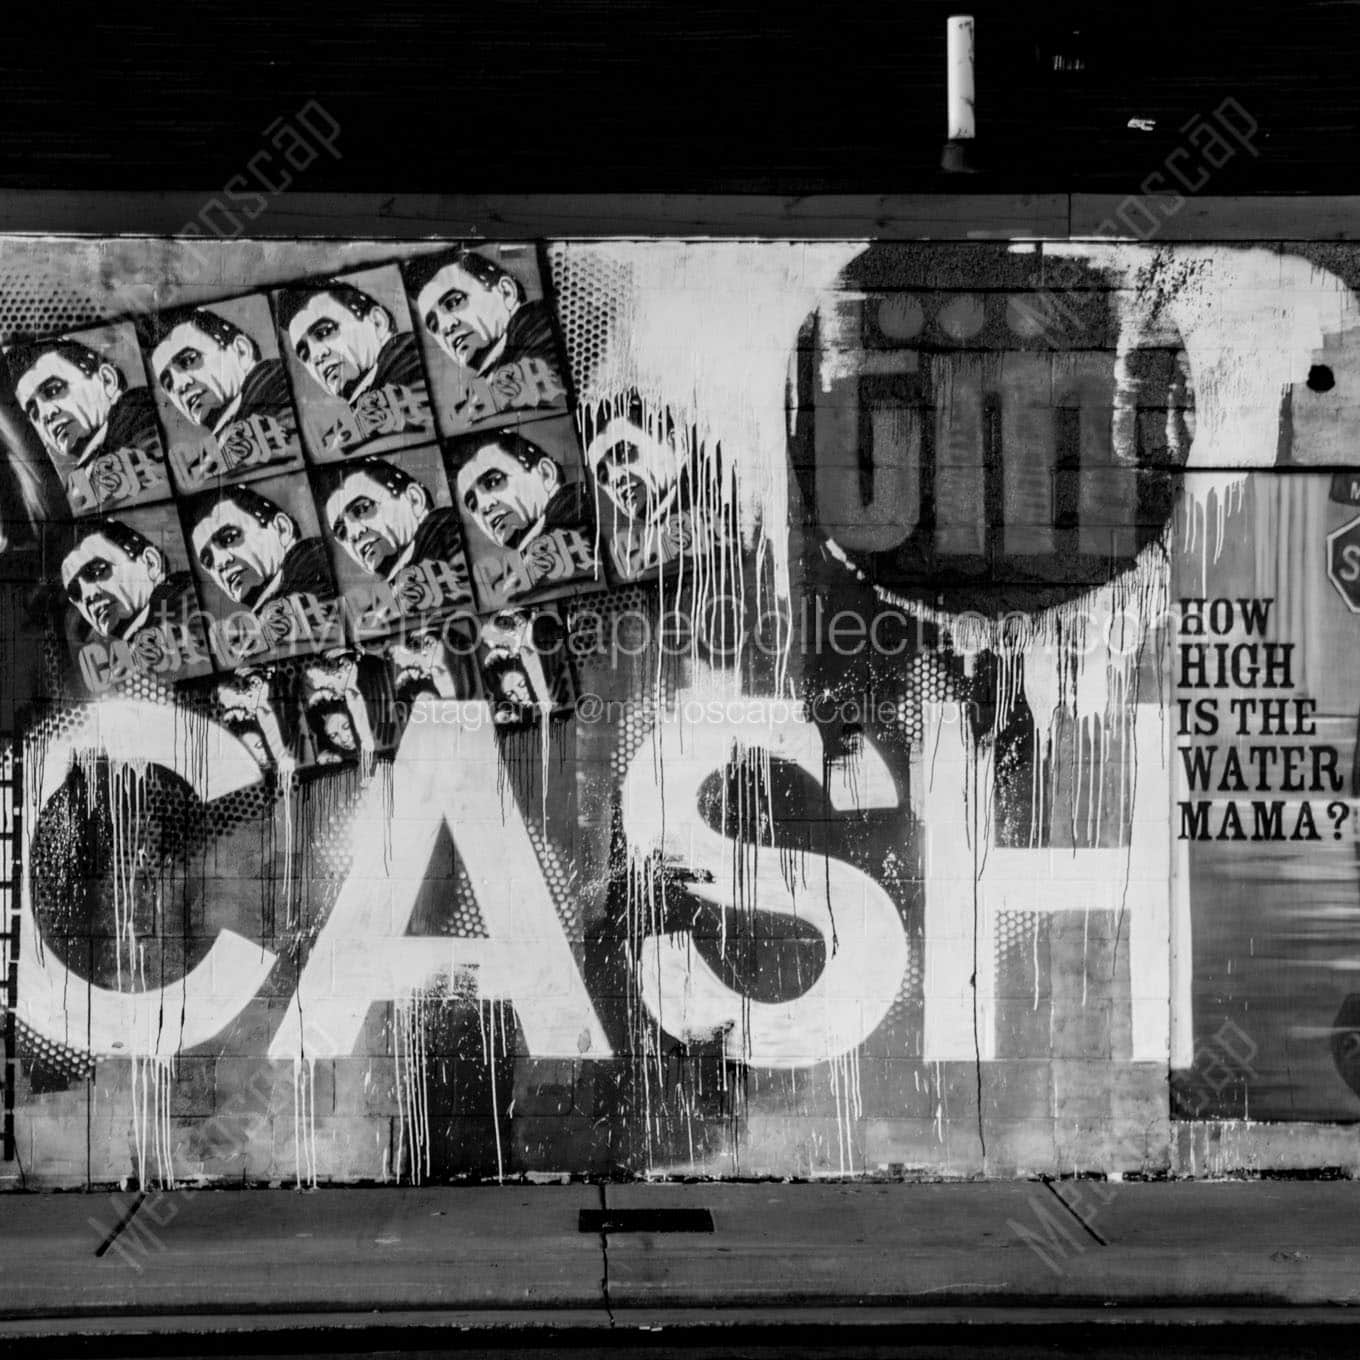 johnny cash mural downtown nashville Black & White Office Art